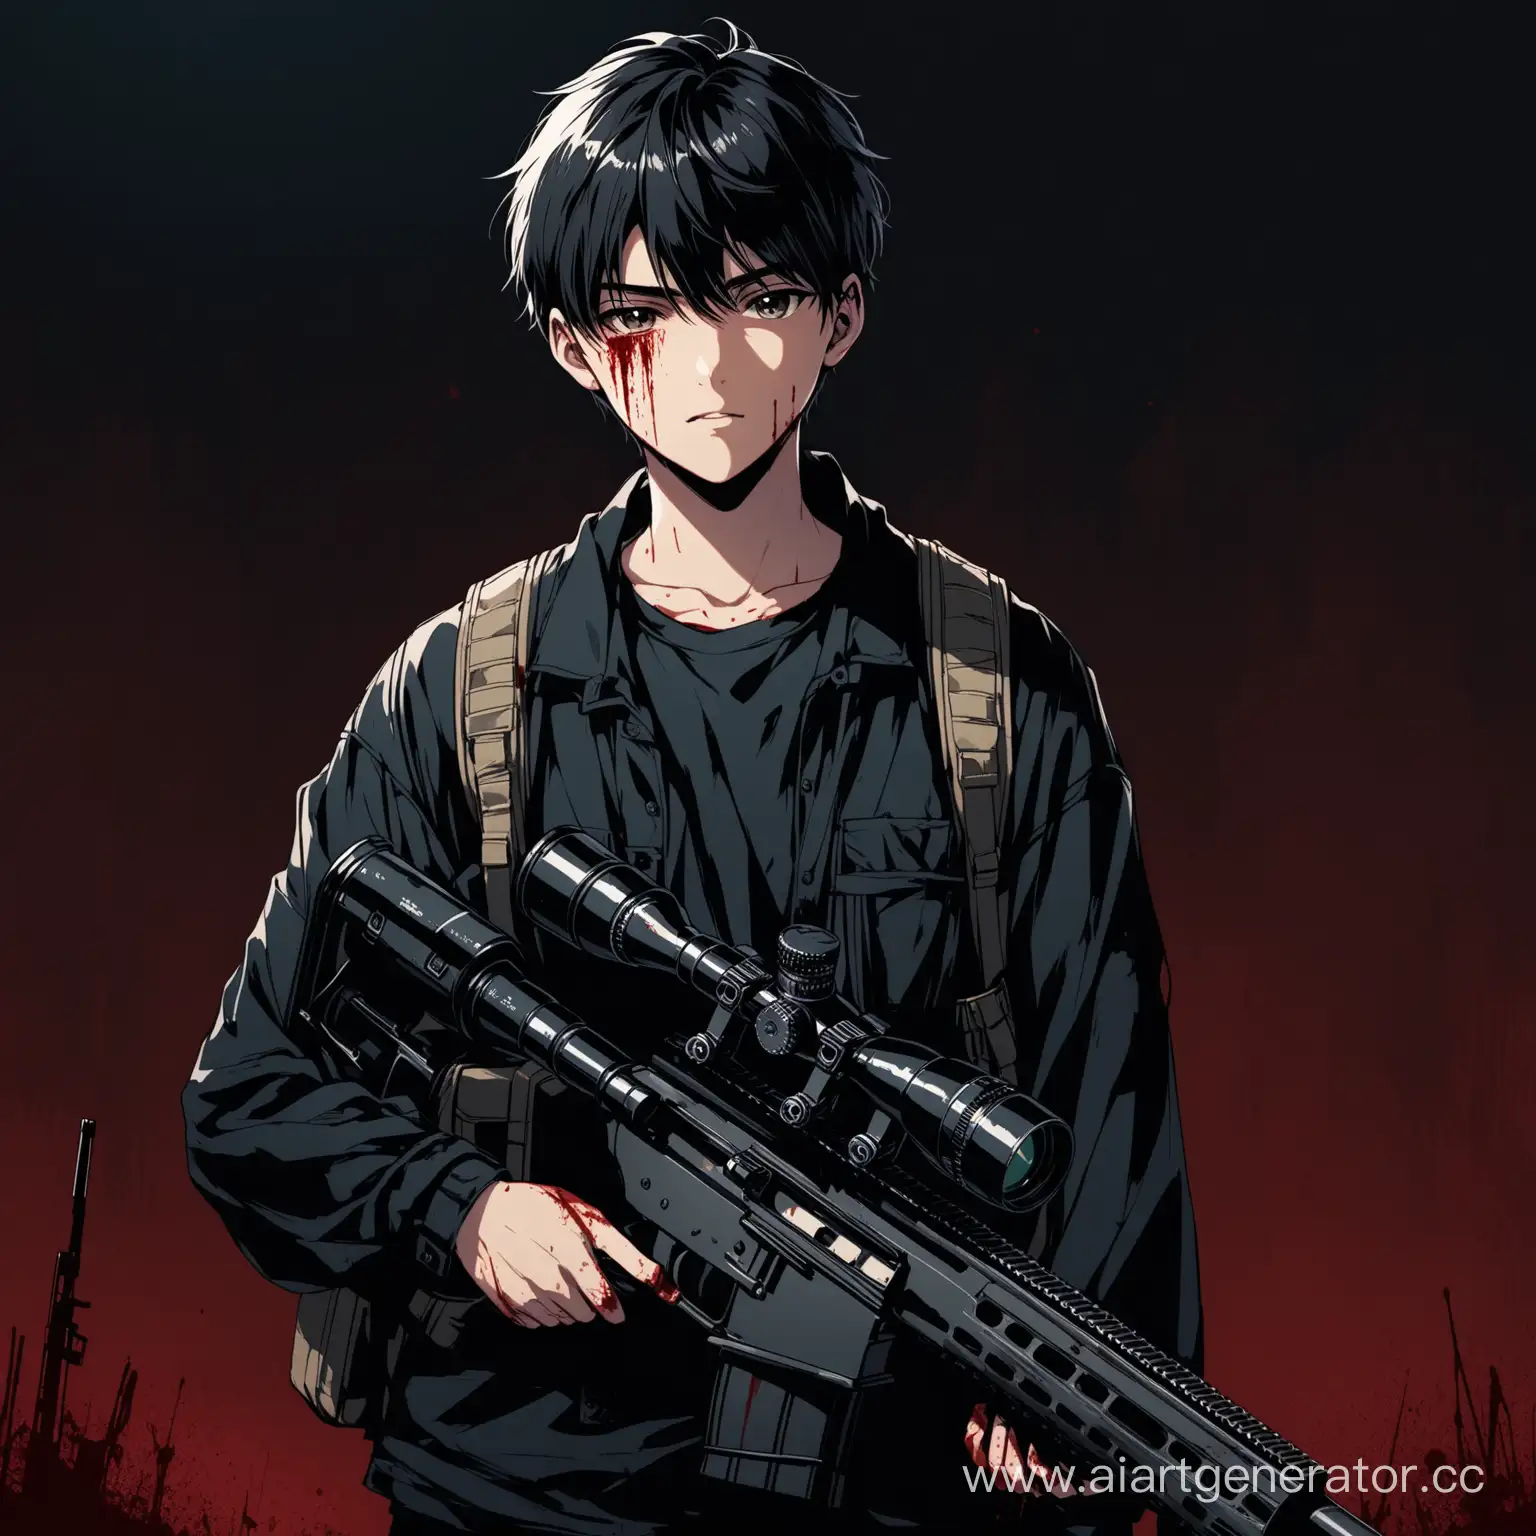 Милый мальчик с снайперская винтовка, держит в руках смотрит в камеру, 20 лет, в обычной одежде, мувик, в тёмной одежде, болия детализации, кровавый фон